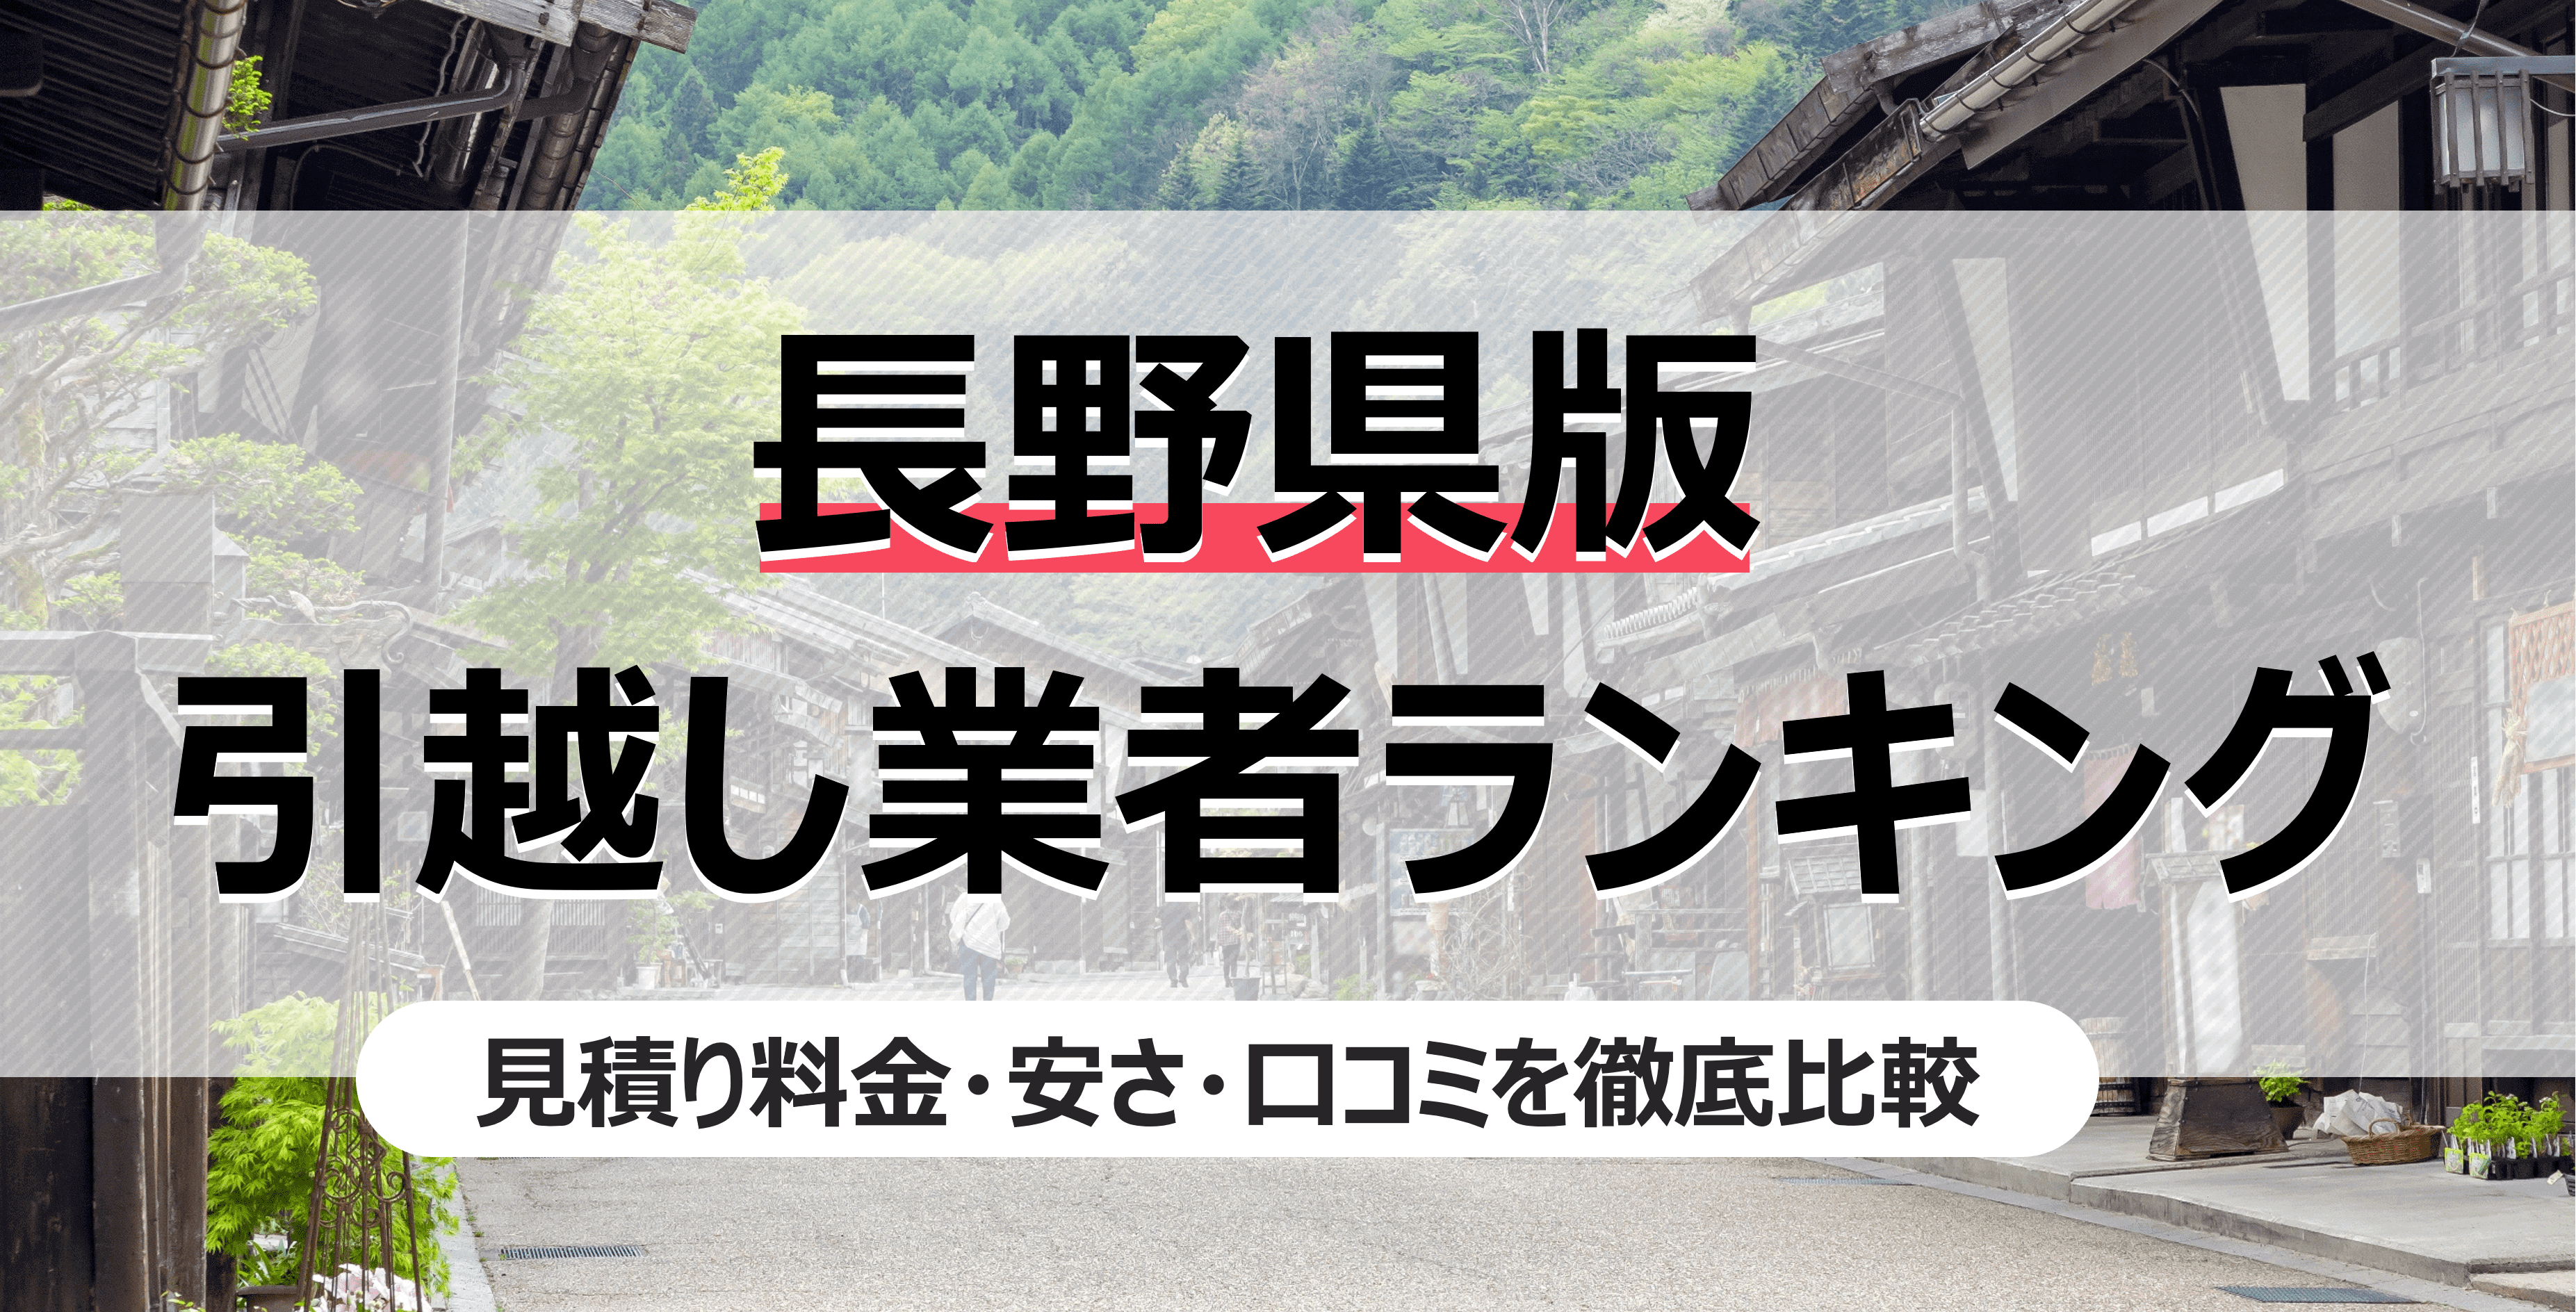 長野県の人気引っ越し業者ランキング